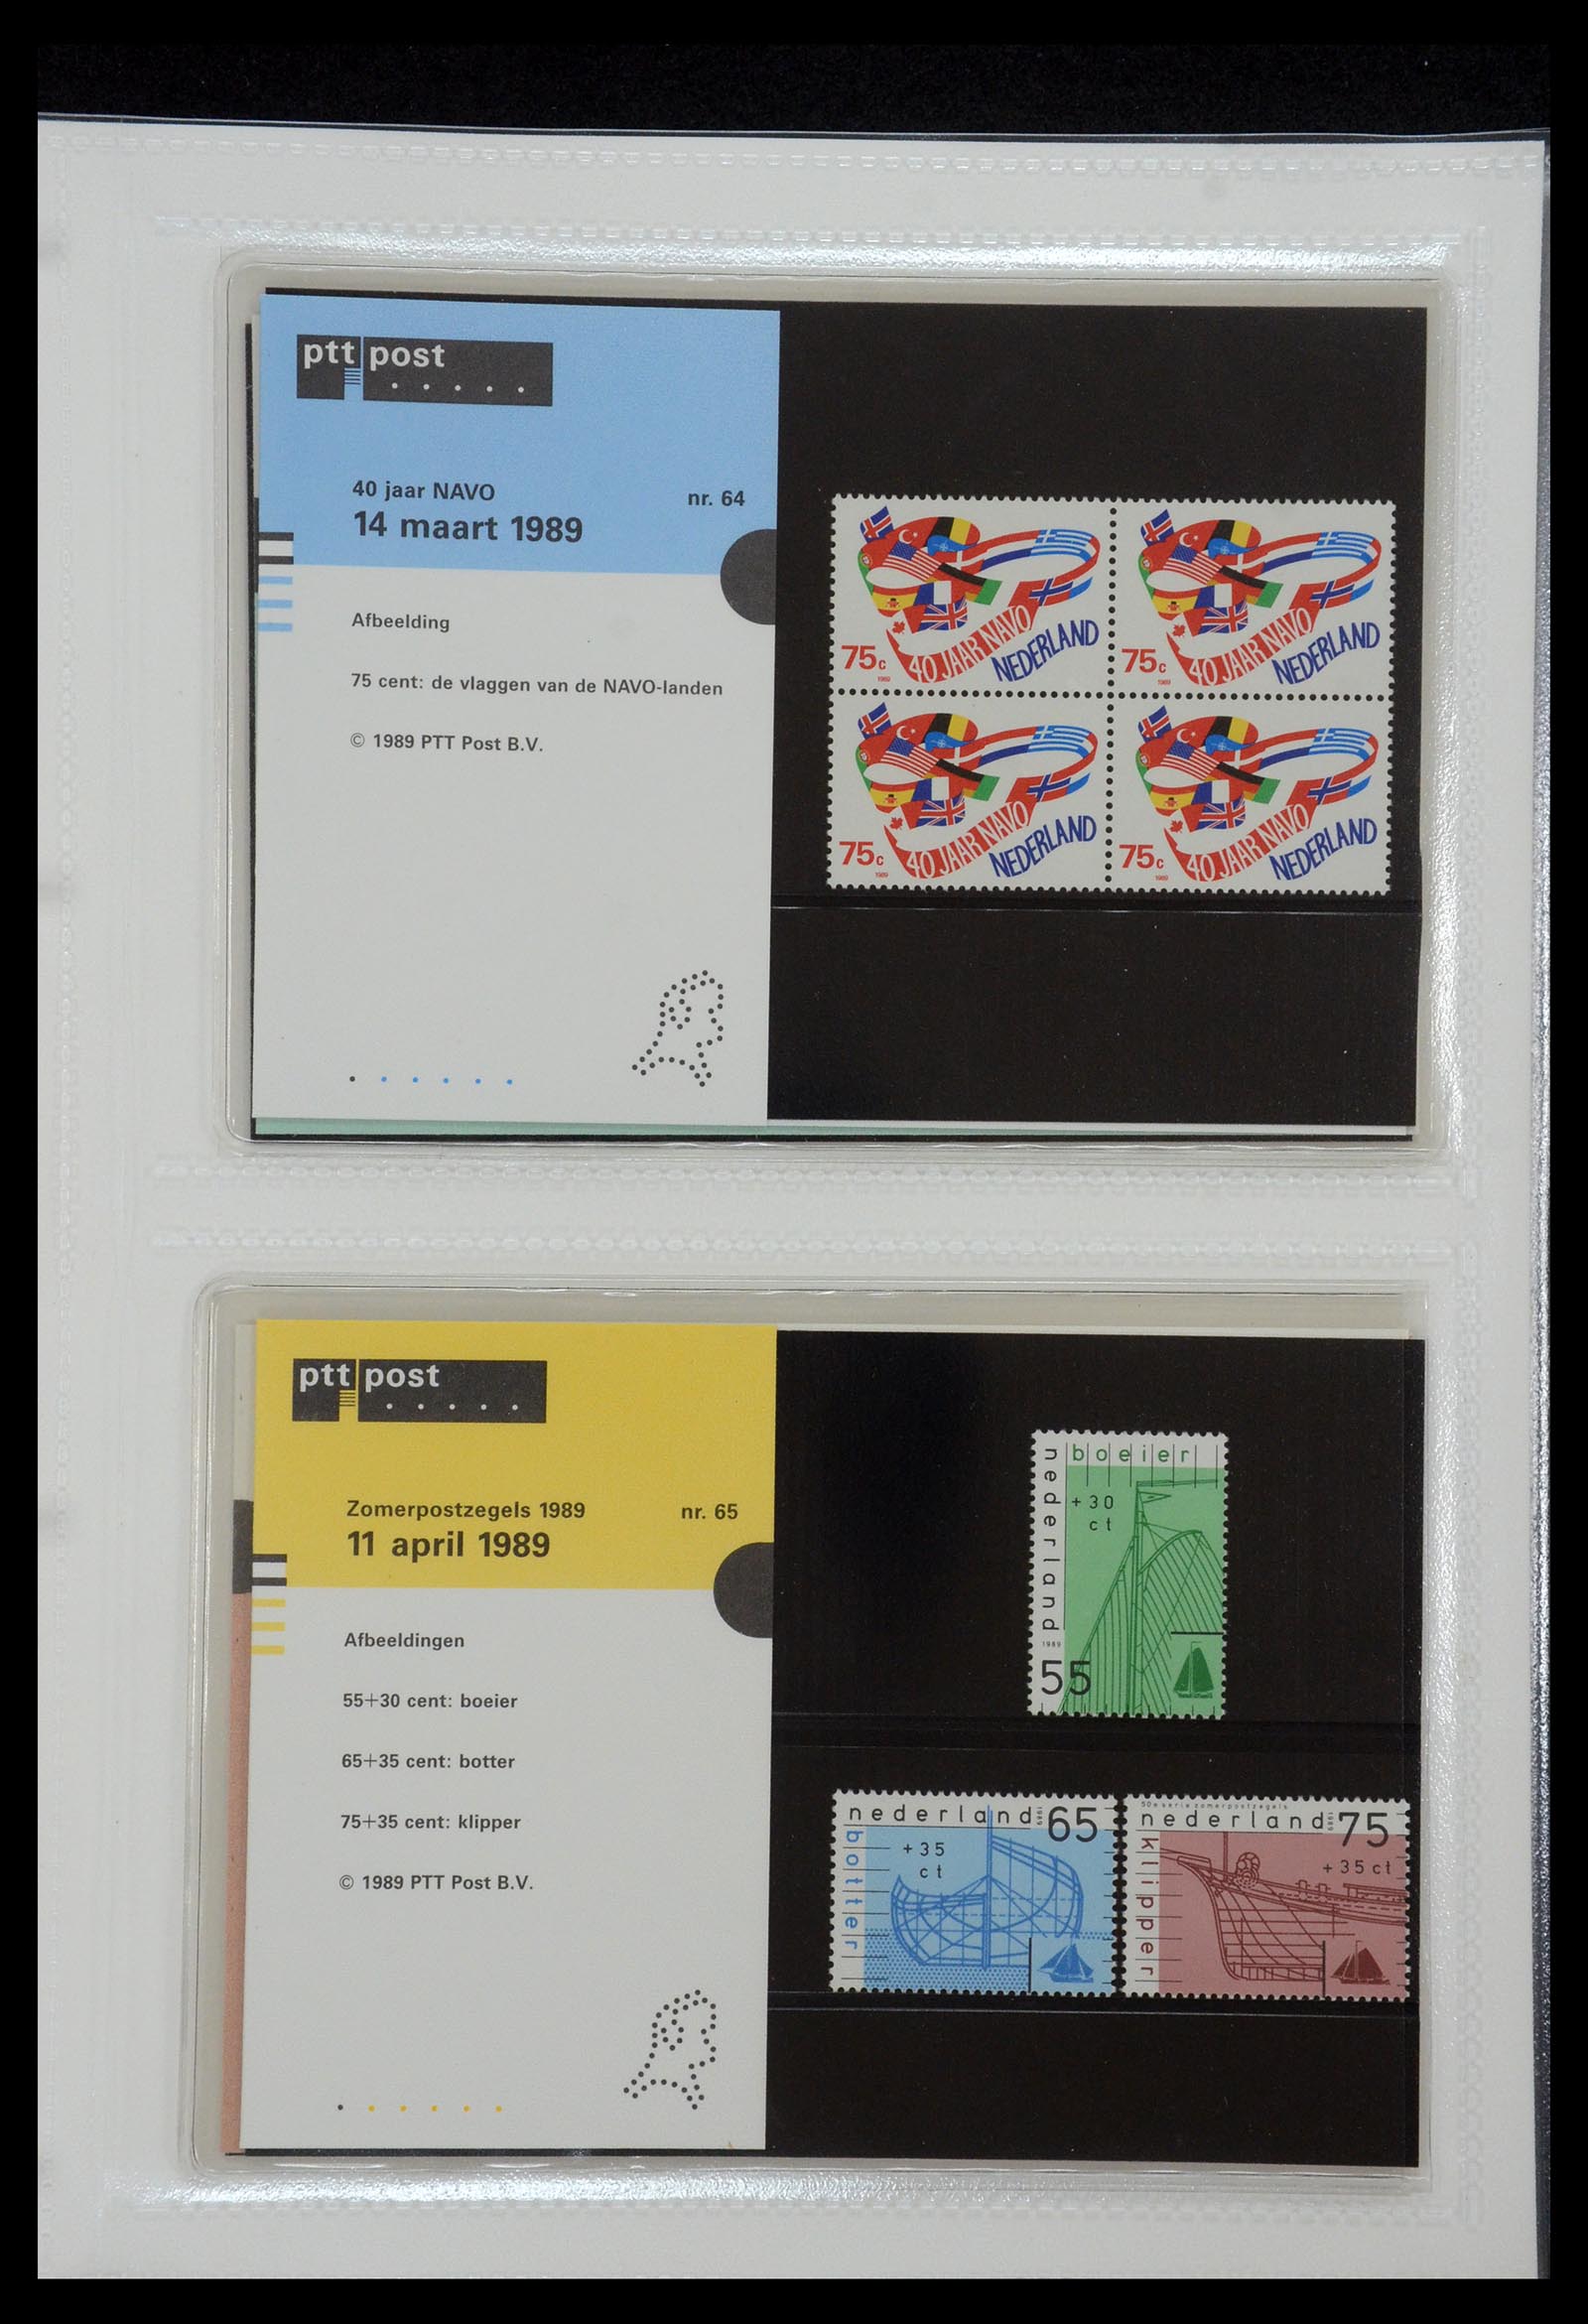 35144 033 - Stamp Collection 35144 Netherlands PTT presentation packs 1982-2021!